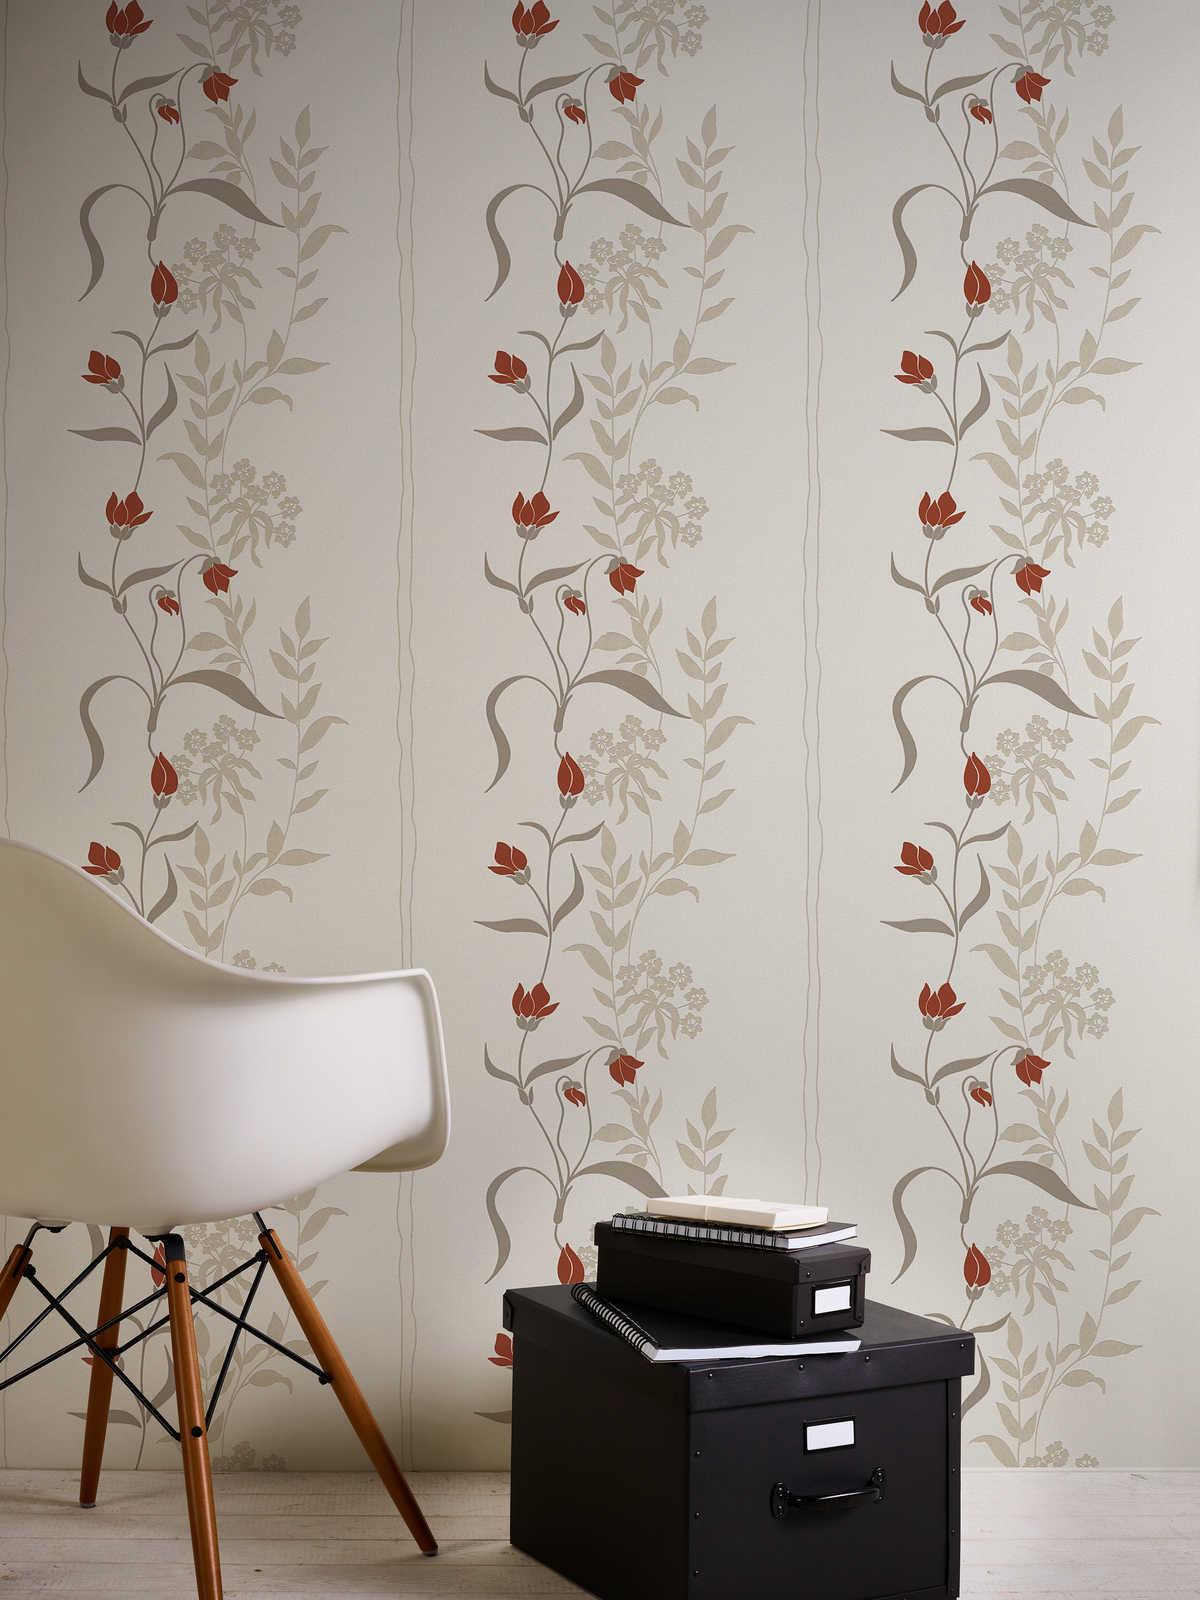             Papier peint salon avec fleurs rinceaux - beige, marron, rouge
        